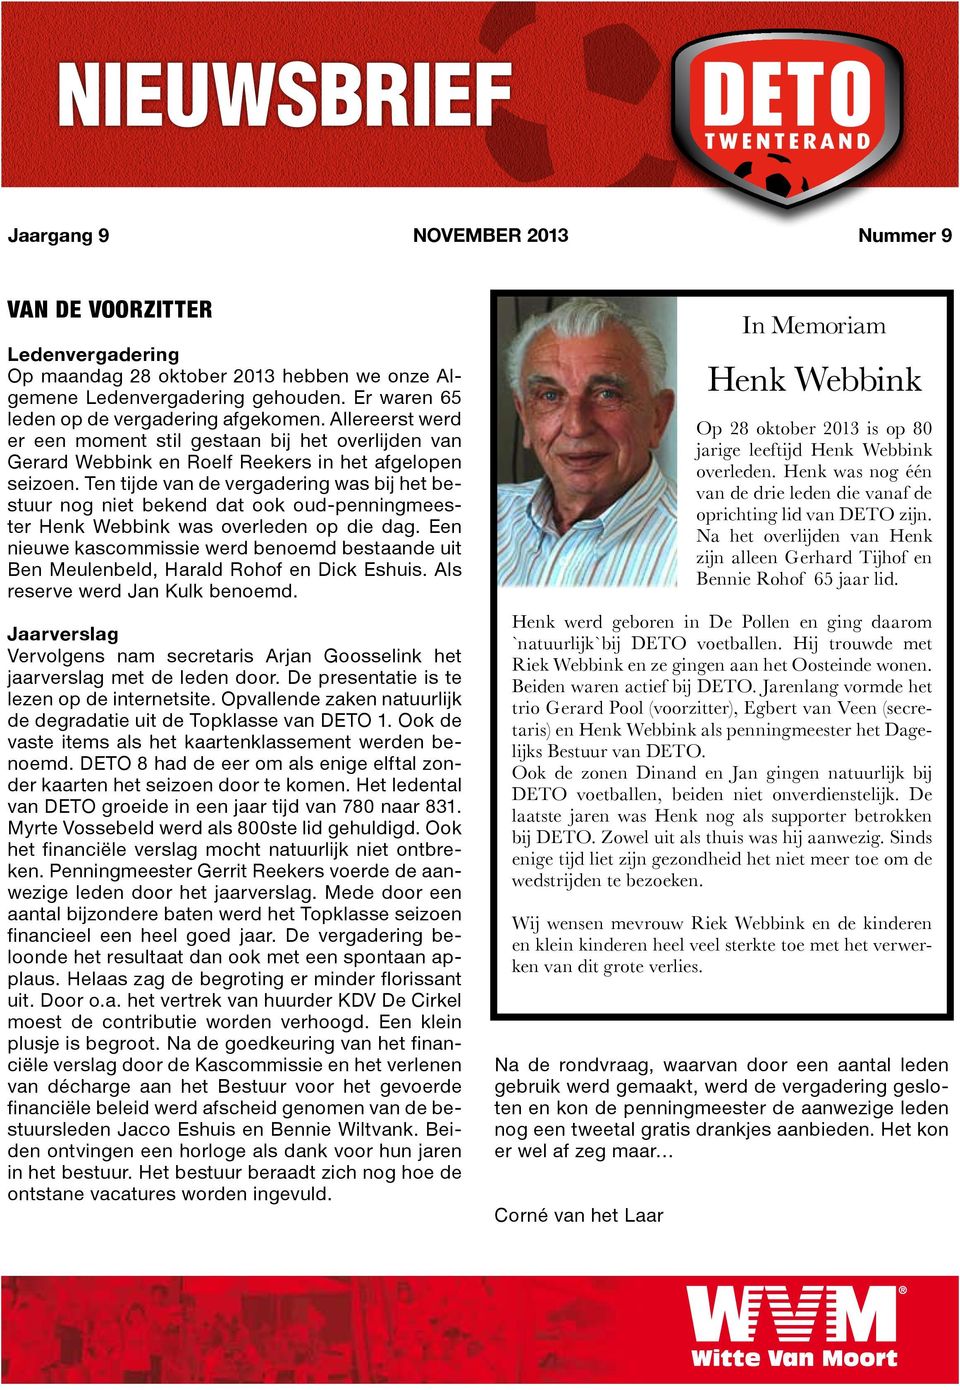 Ten tijde van de vergadering was bij het bestuur nog niet bekend dat ook oud-penningmeester Henk Webbink was overleden op die dag.